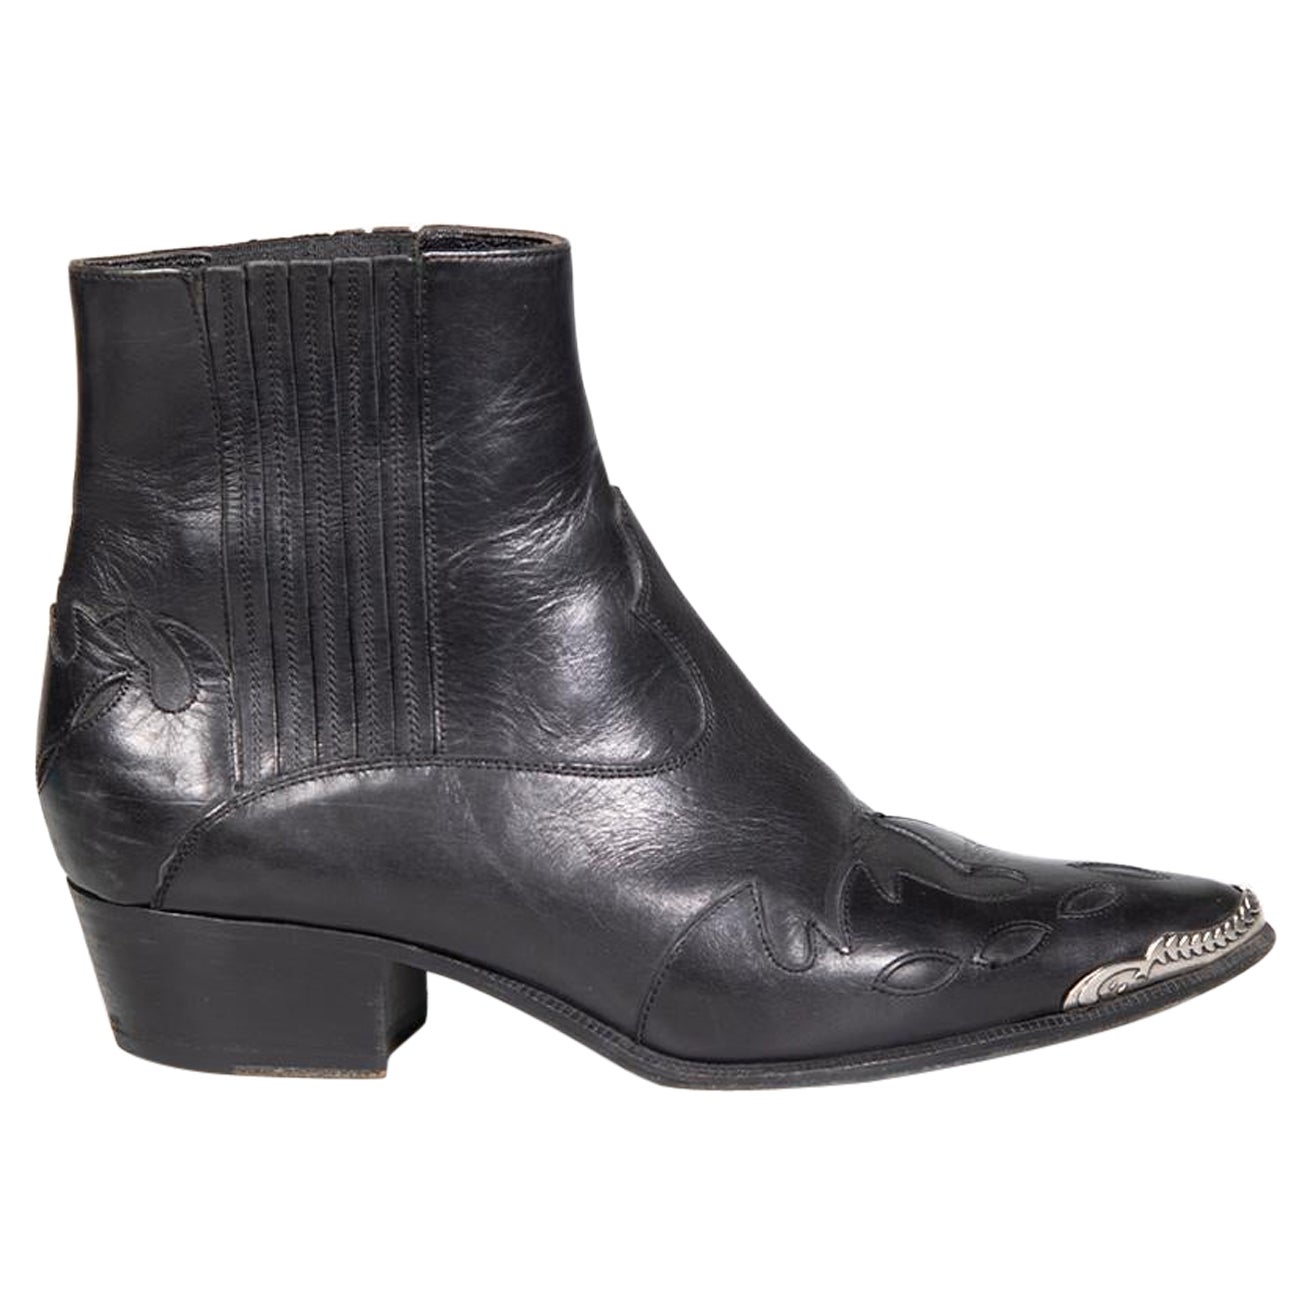 Saint Laurent Black Leather Western Cowboy Boots Size IT 37 For Sale